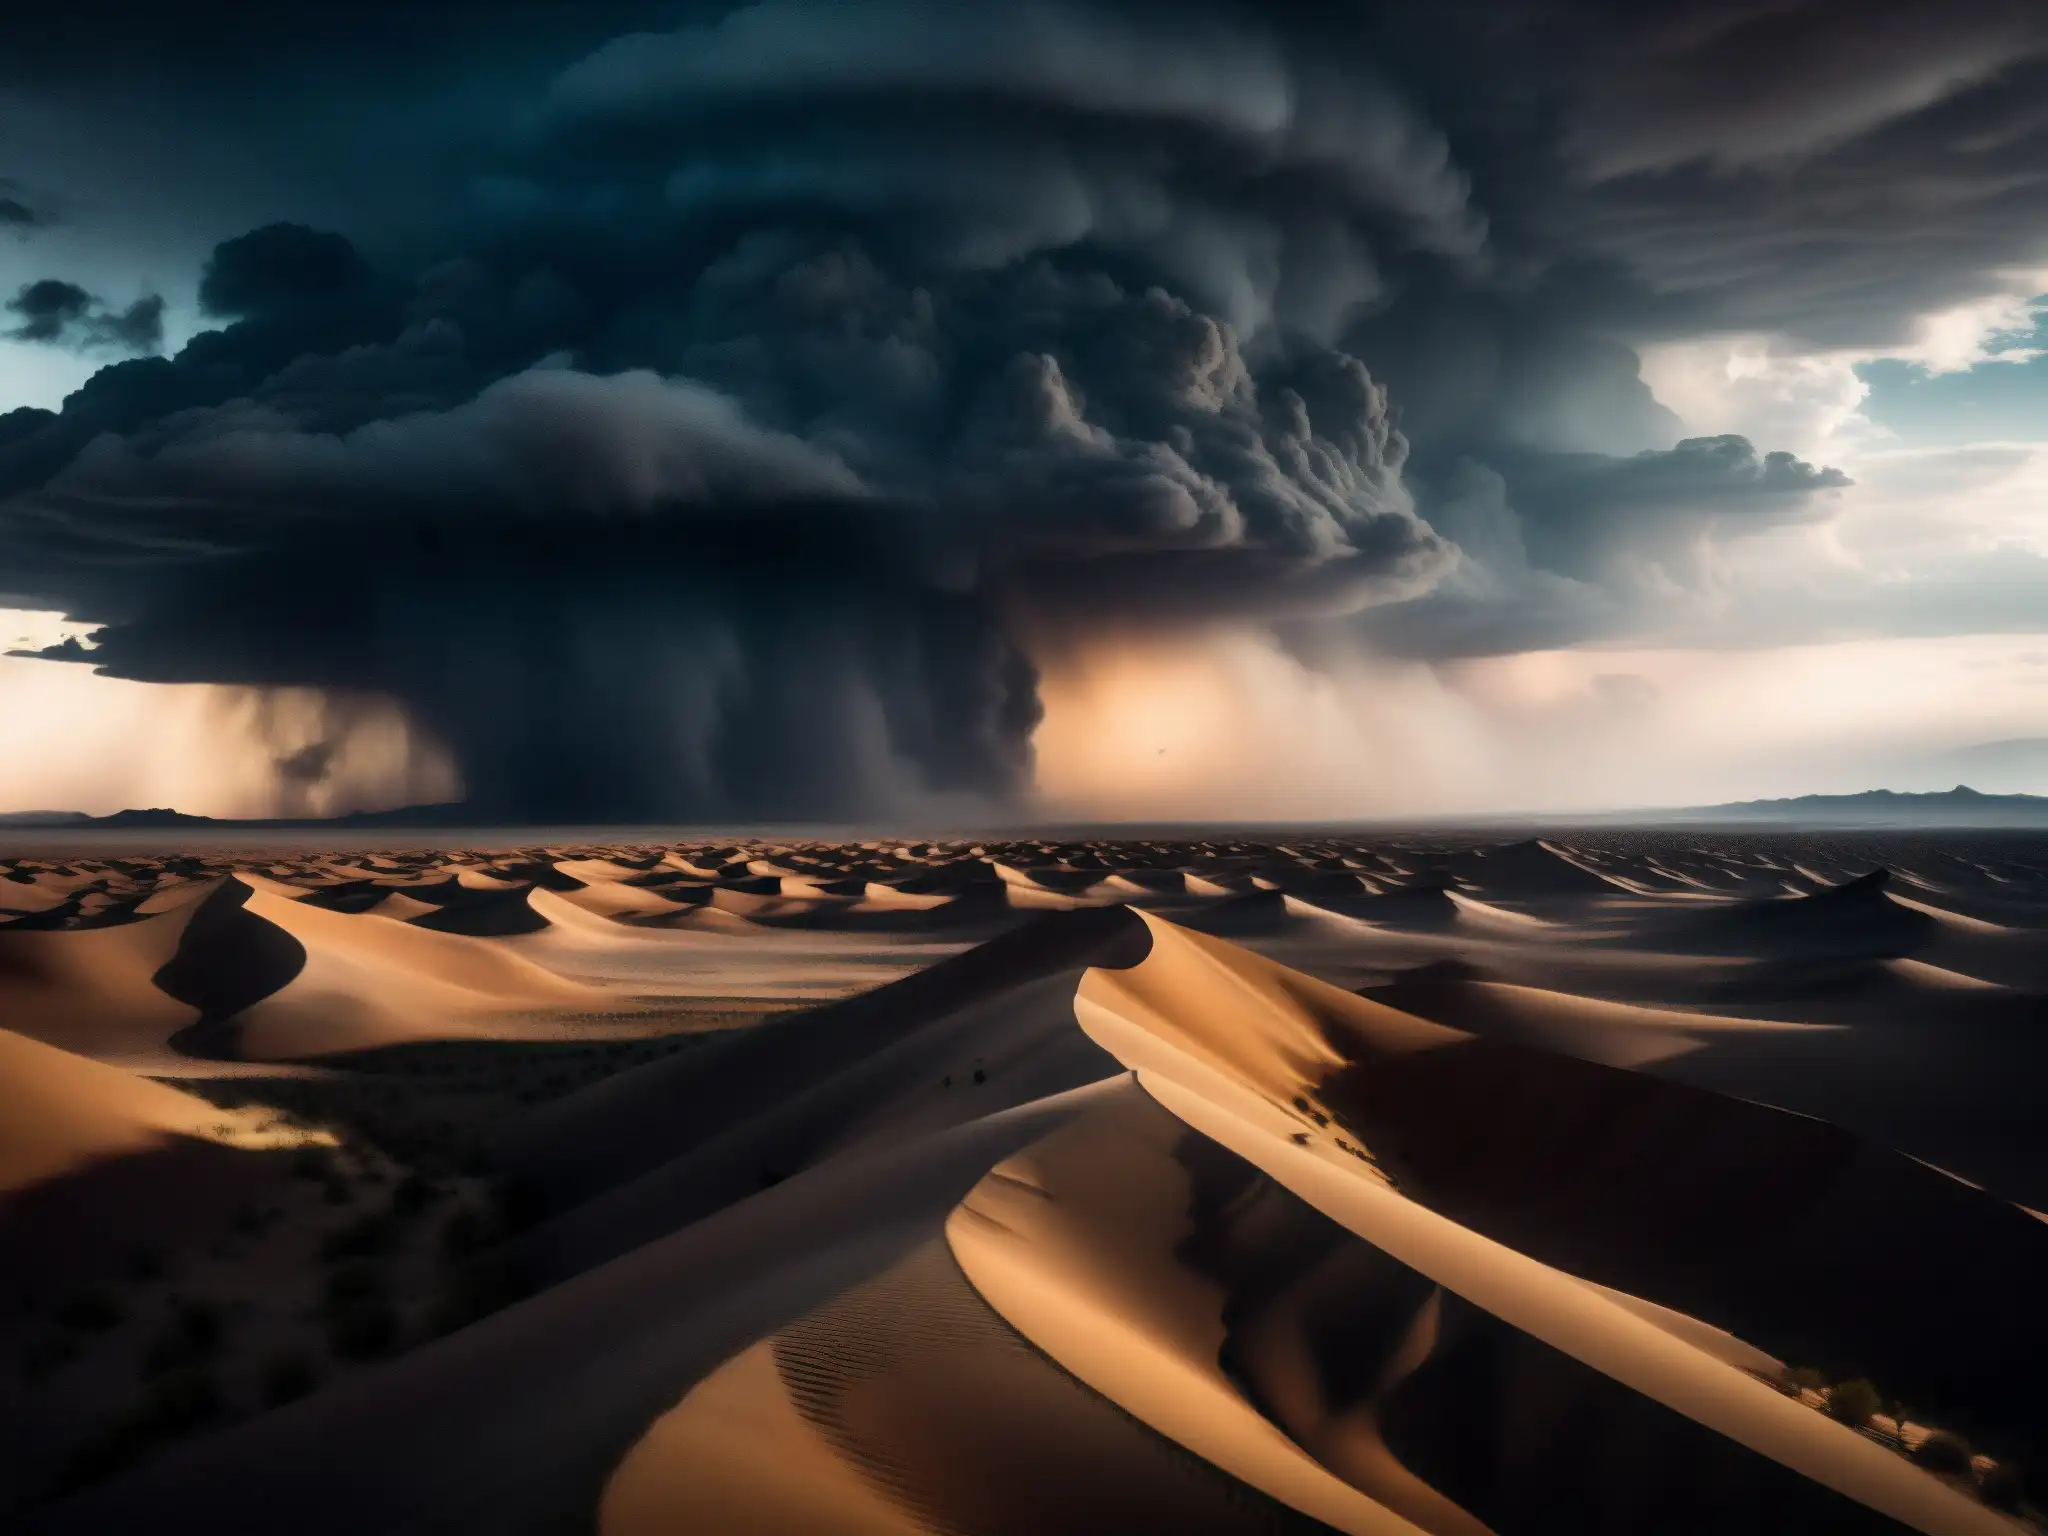 La leyenda del viento negro en el desierto se vislumbra en la tormenta de polvo y la misteriosa luz